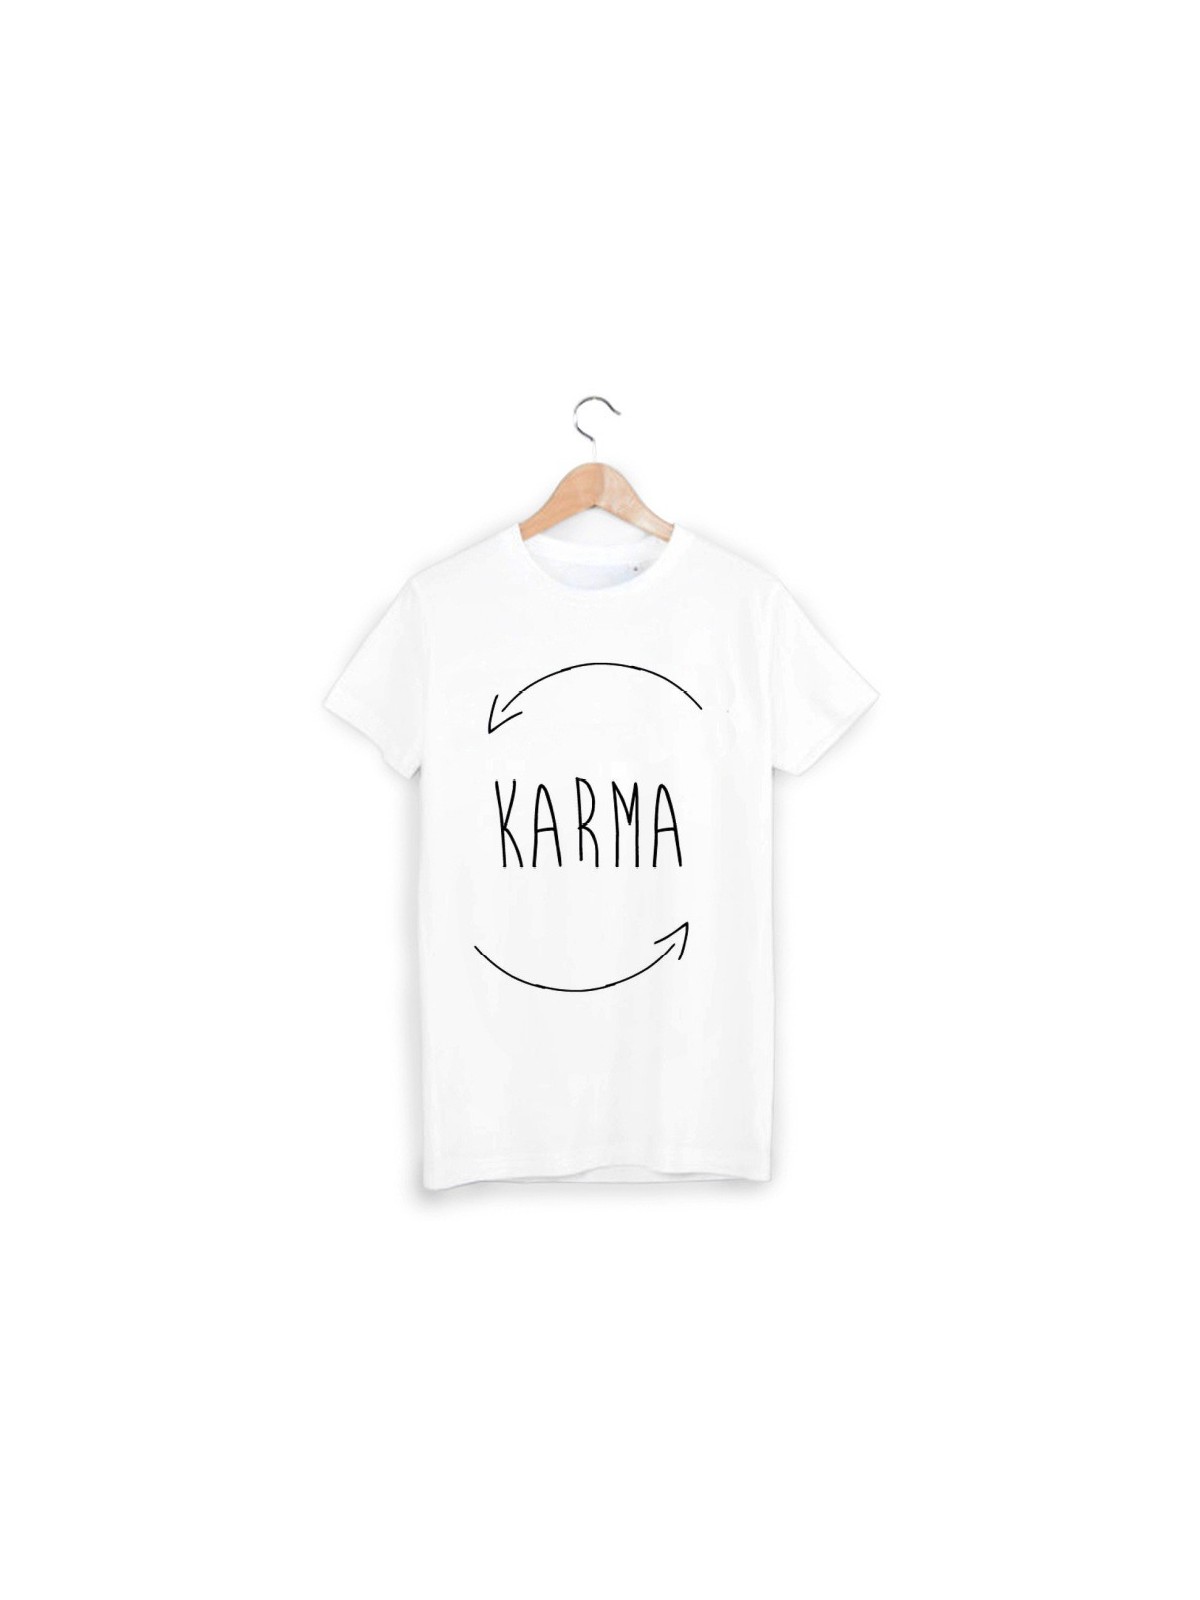 T-Shirt karma ref 844